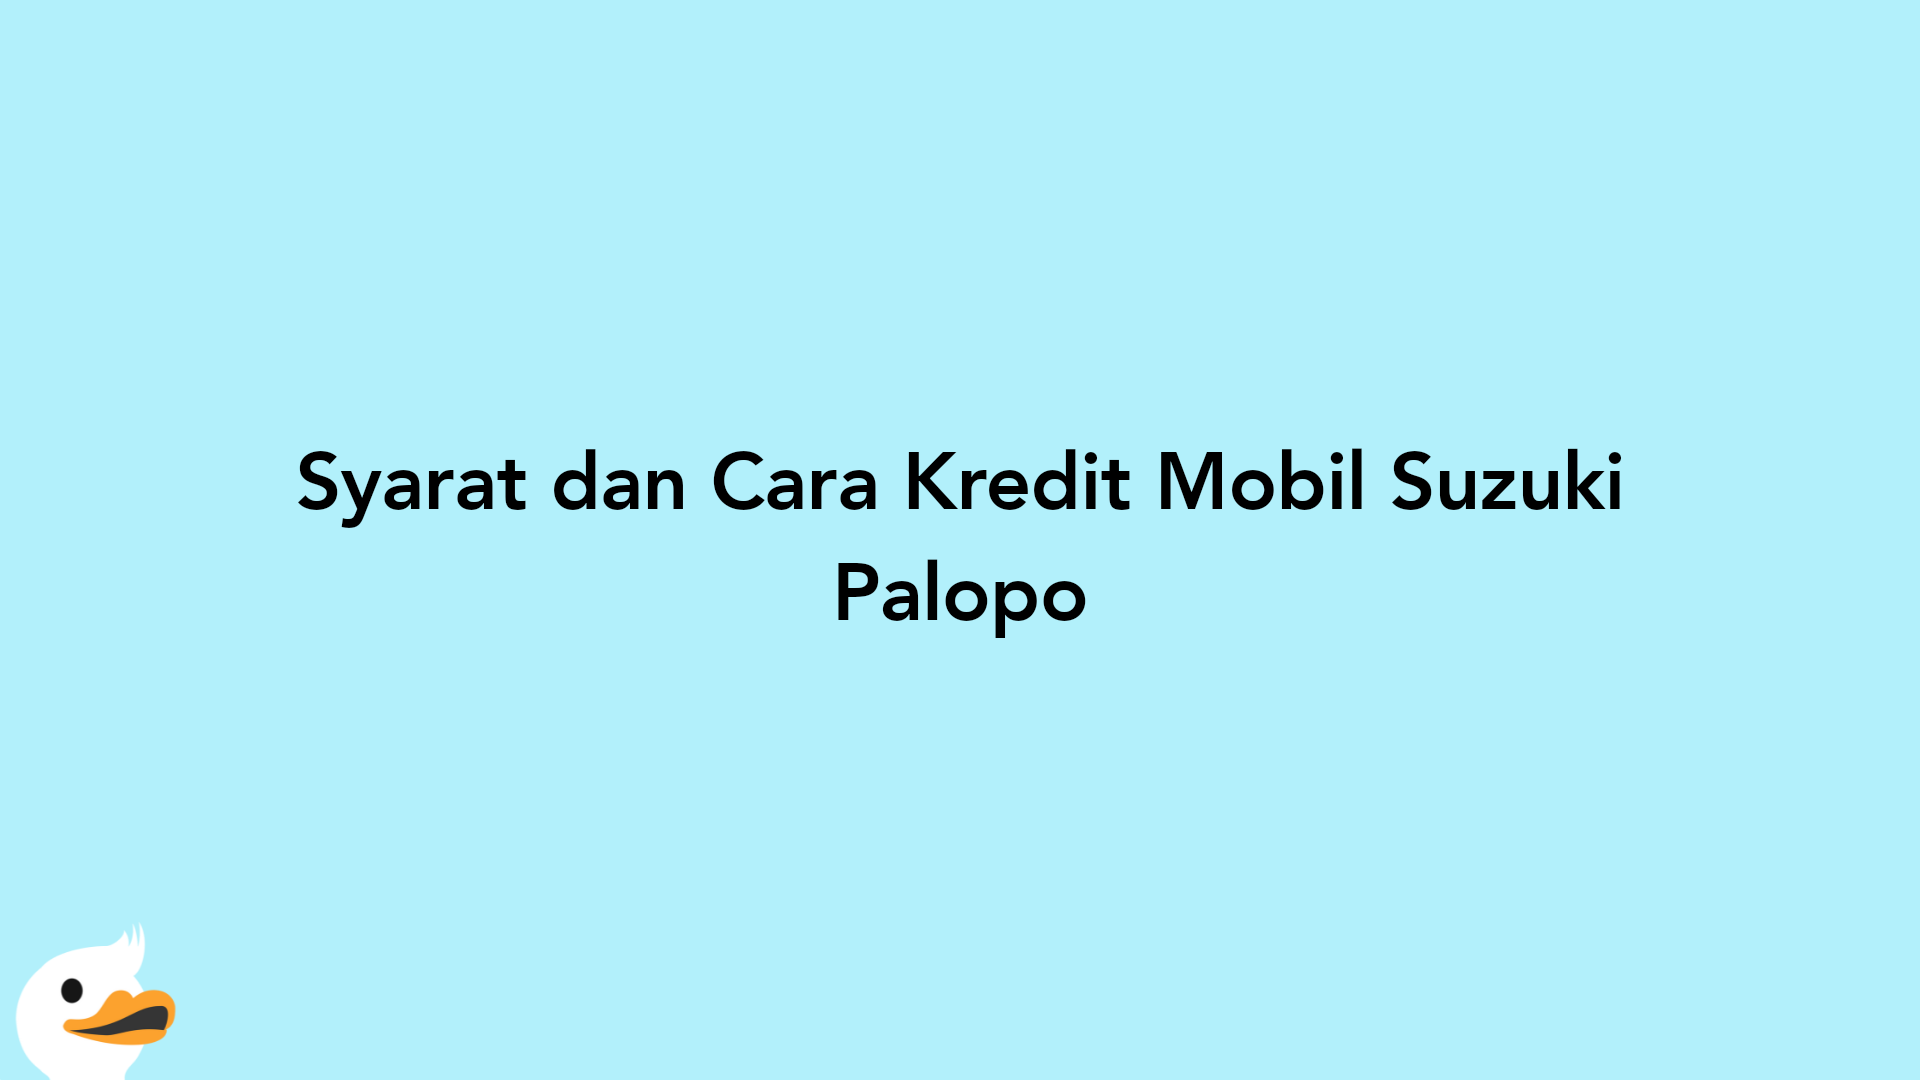 Syarat dan Cara Kredit Mobil Suzuki Palopo